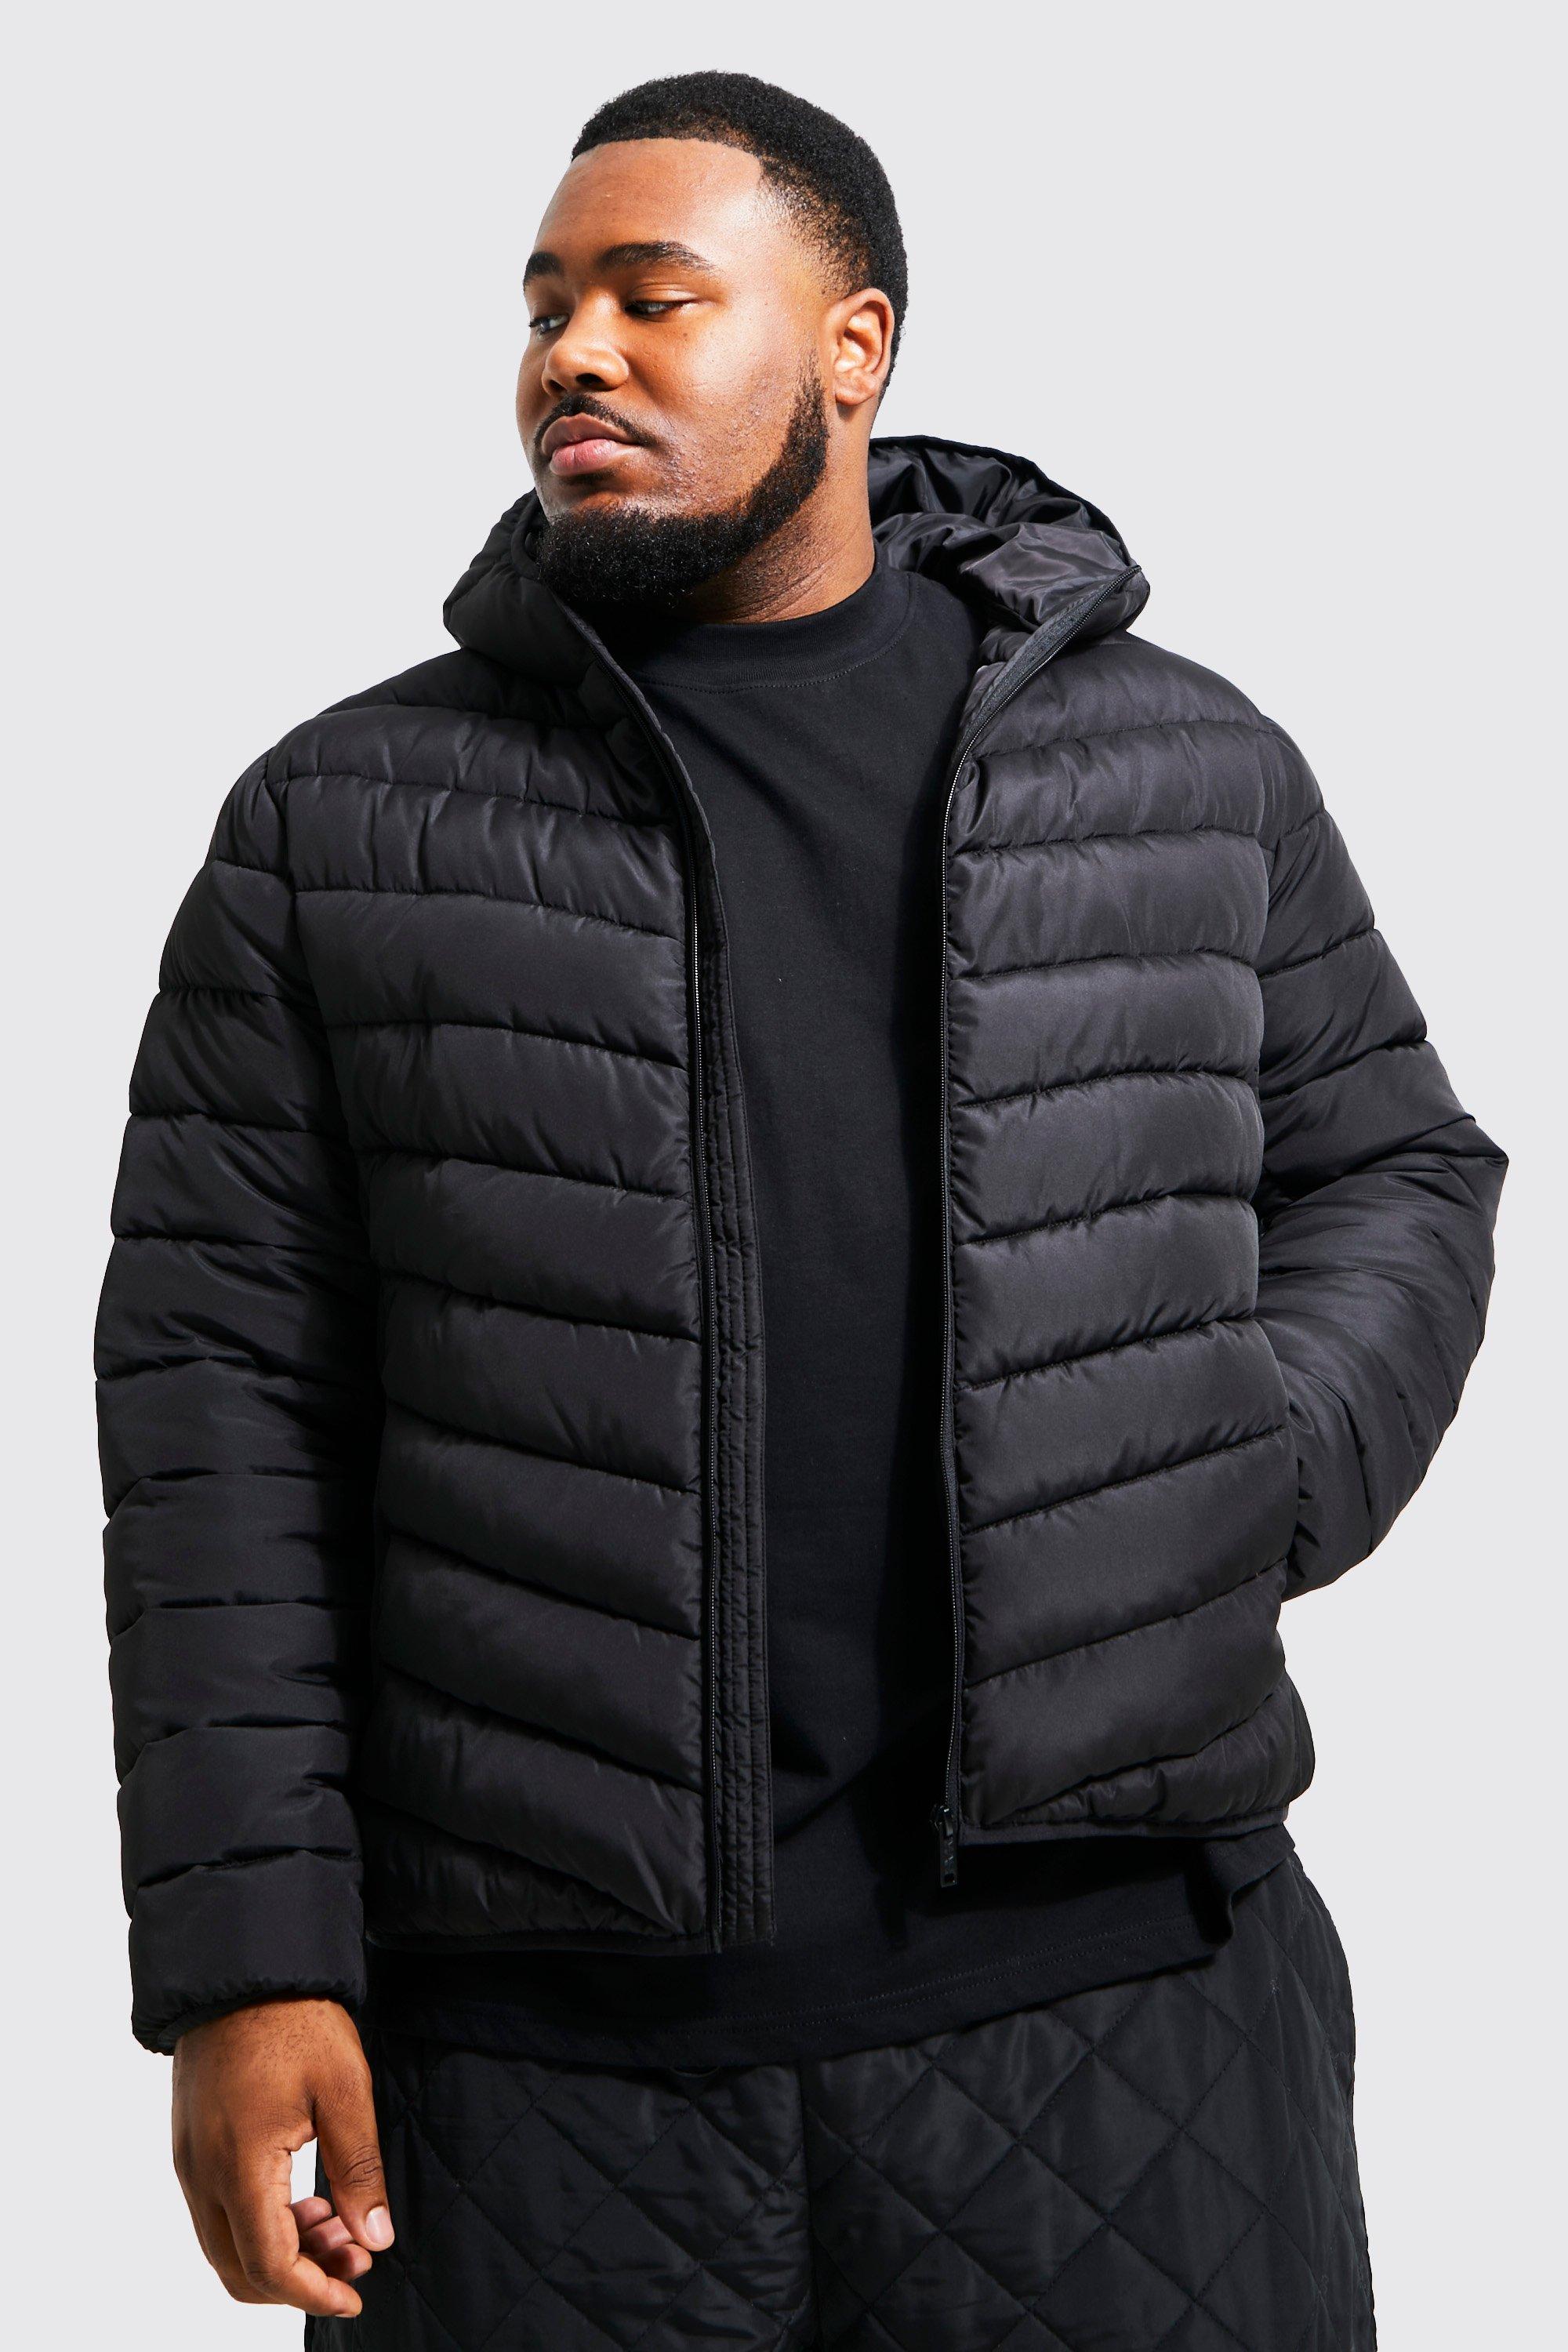 grande taille - veste matelassée zippée homme - noir - xxxl, noir